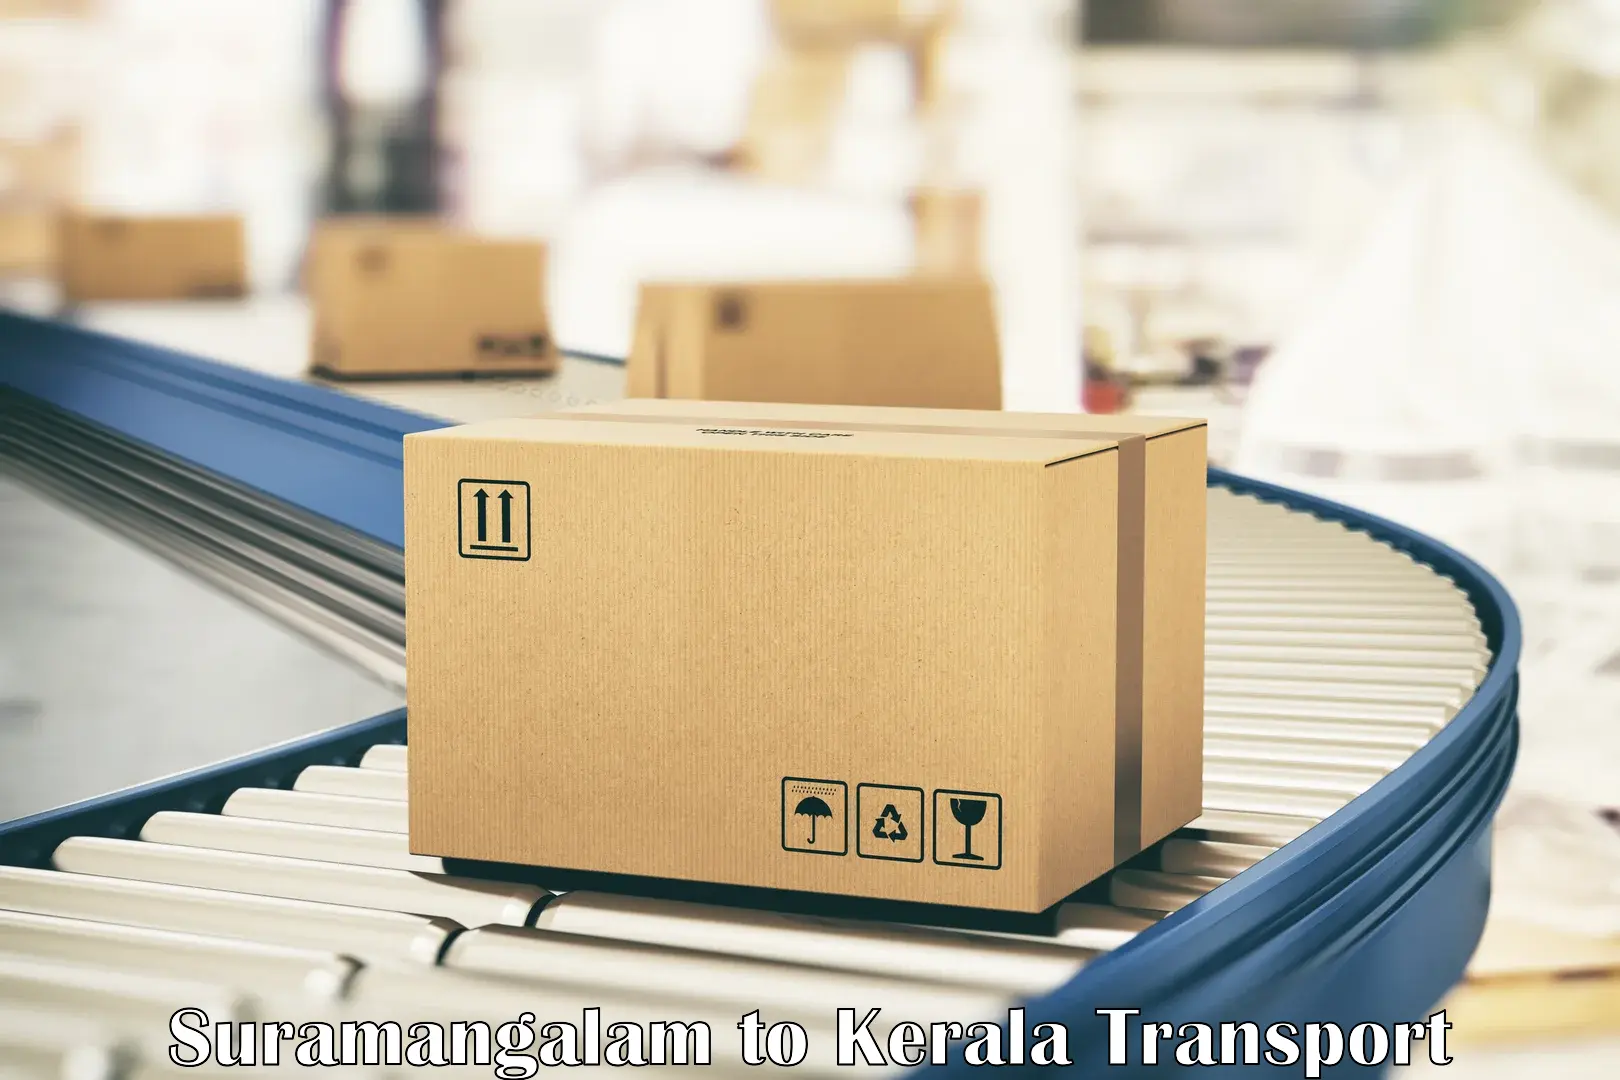 Nearest transport service Suramangalam to Kondotty